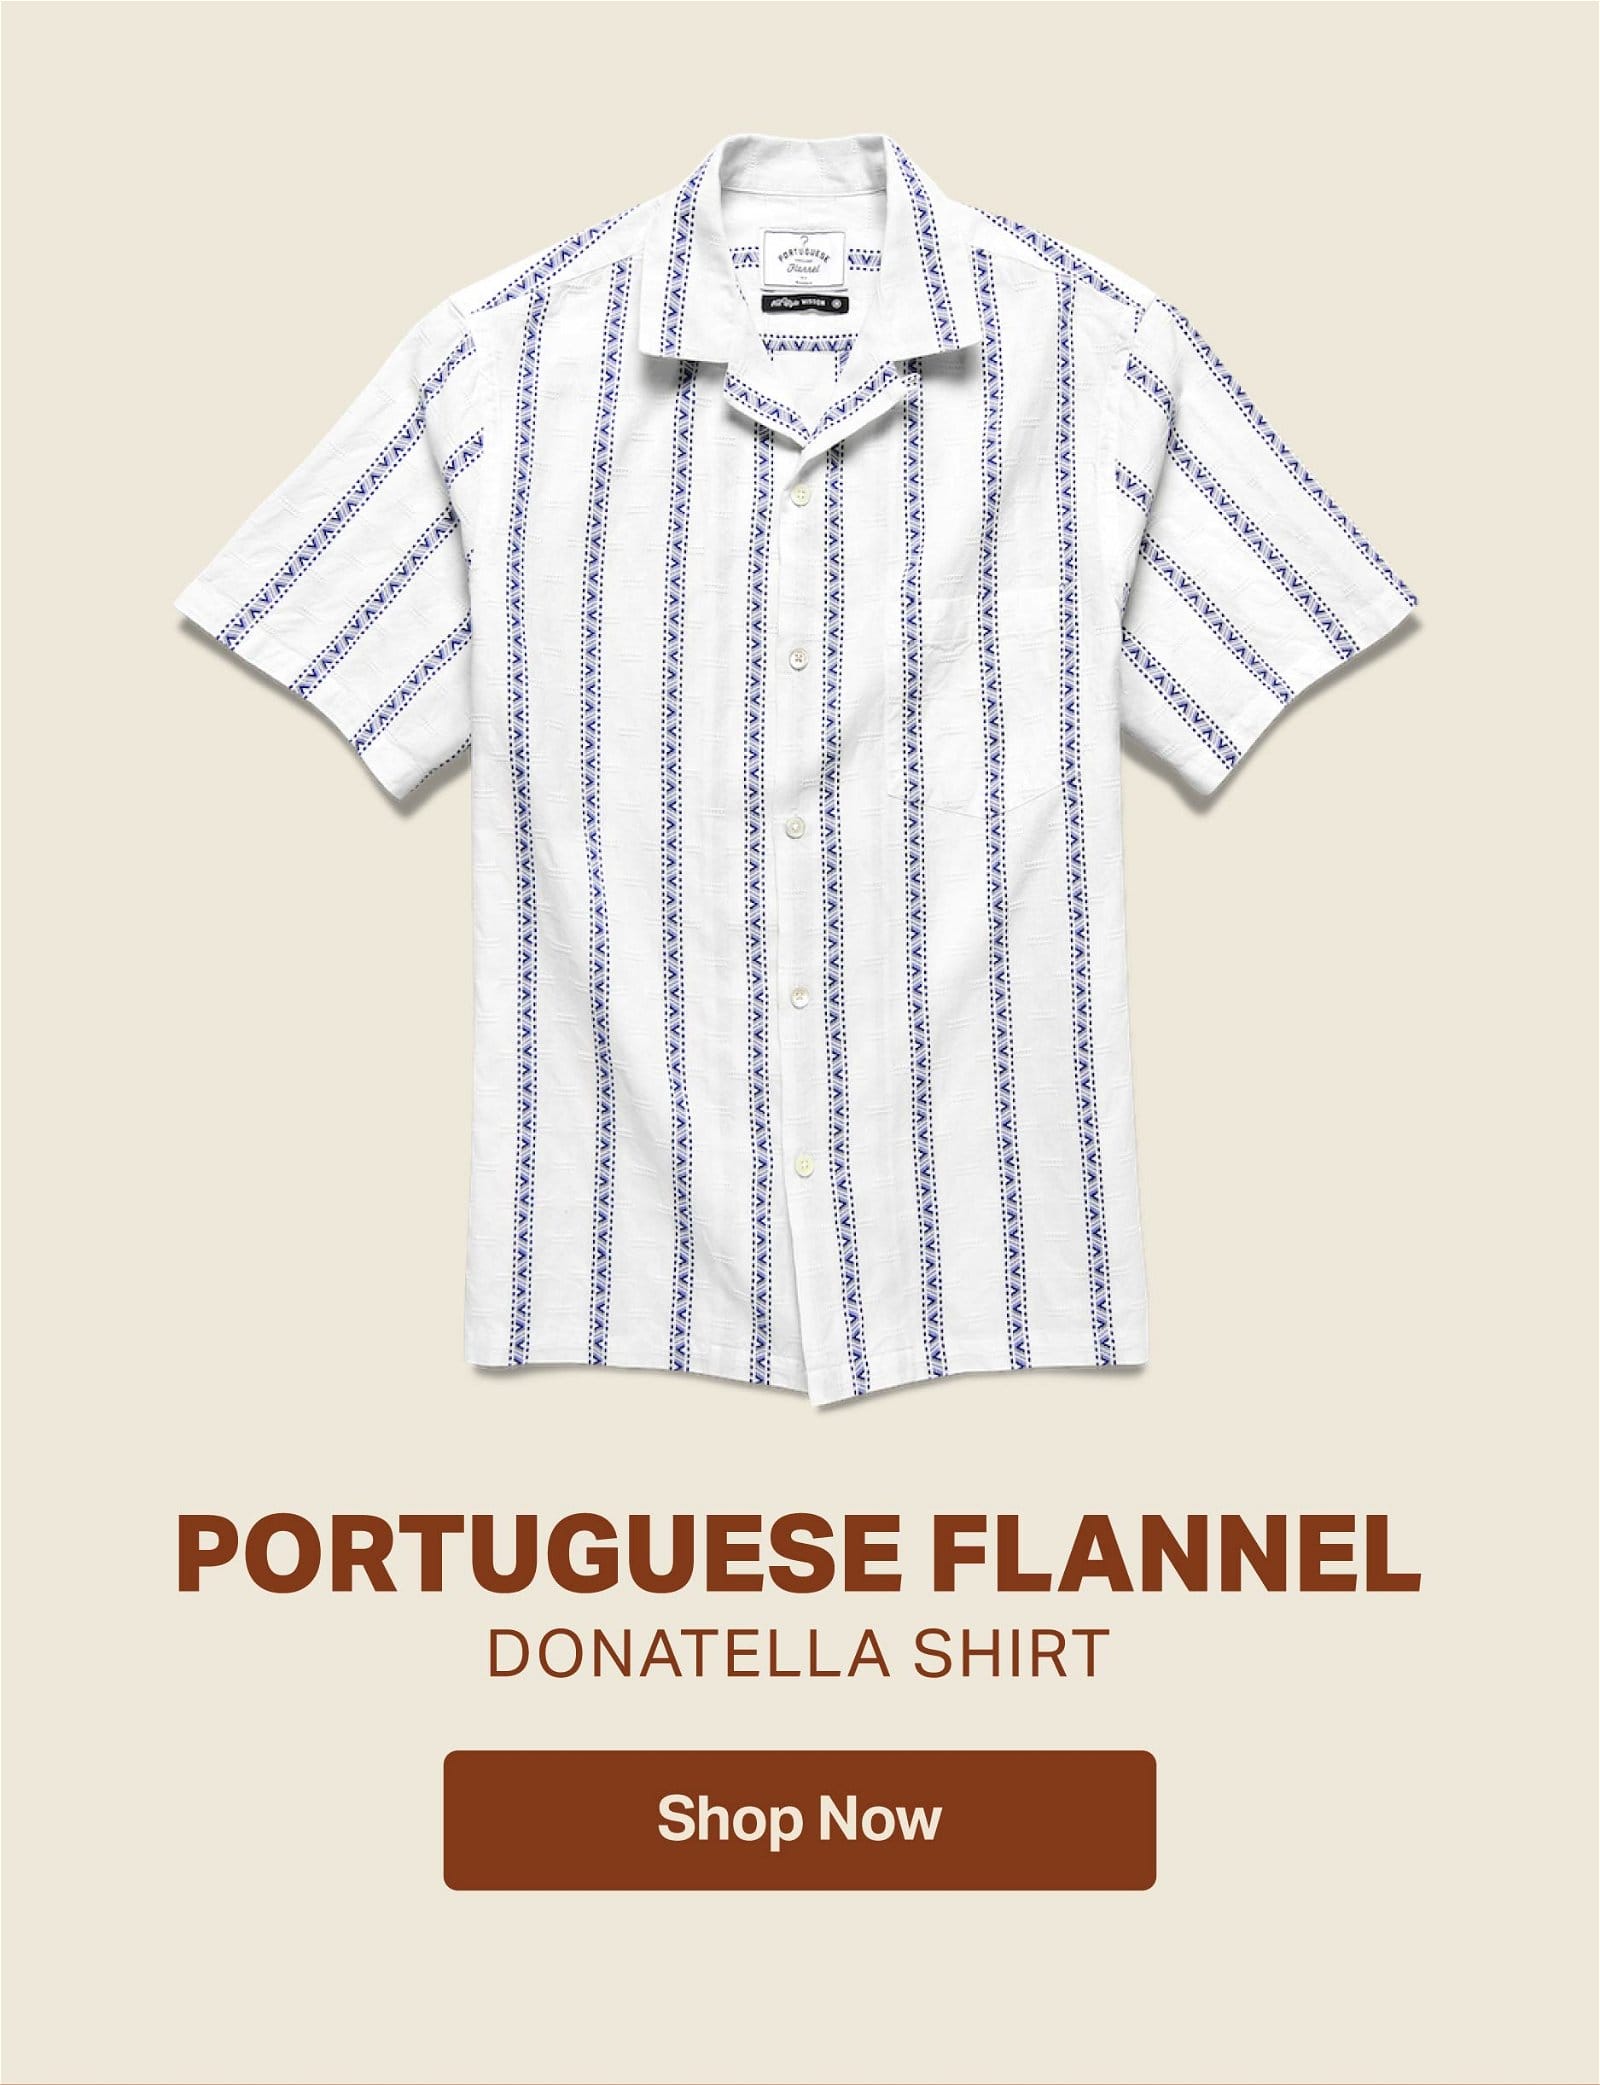 Portuguese Flannel Donatella Shirt